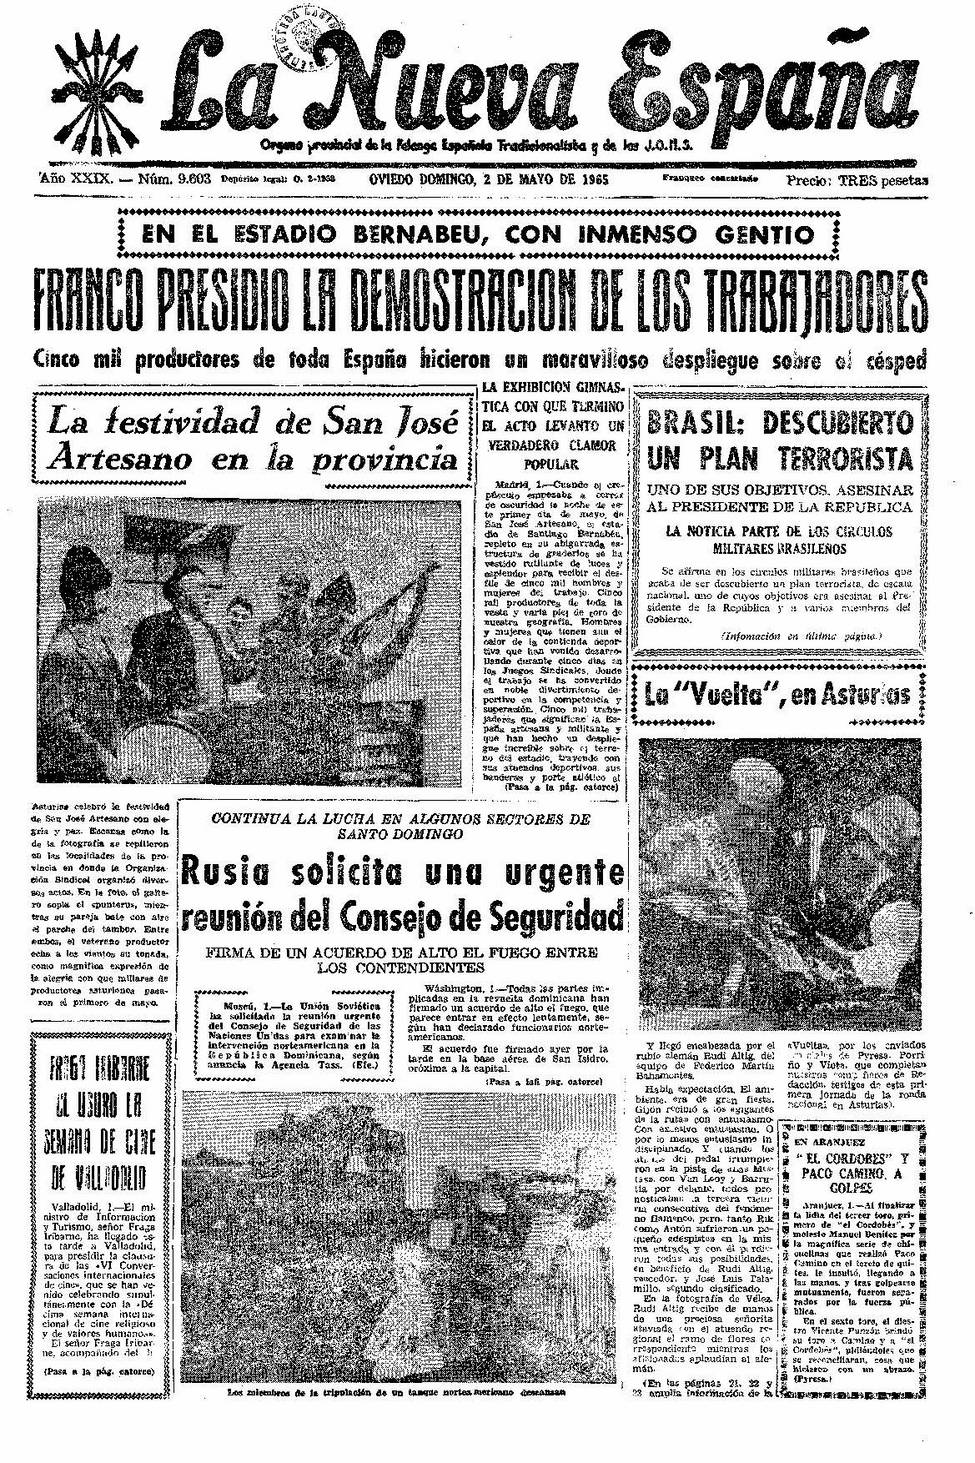 Portada del Domingo, 2 de Mayo de 1965